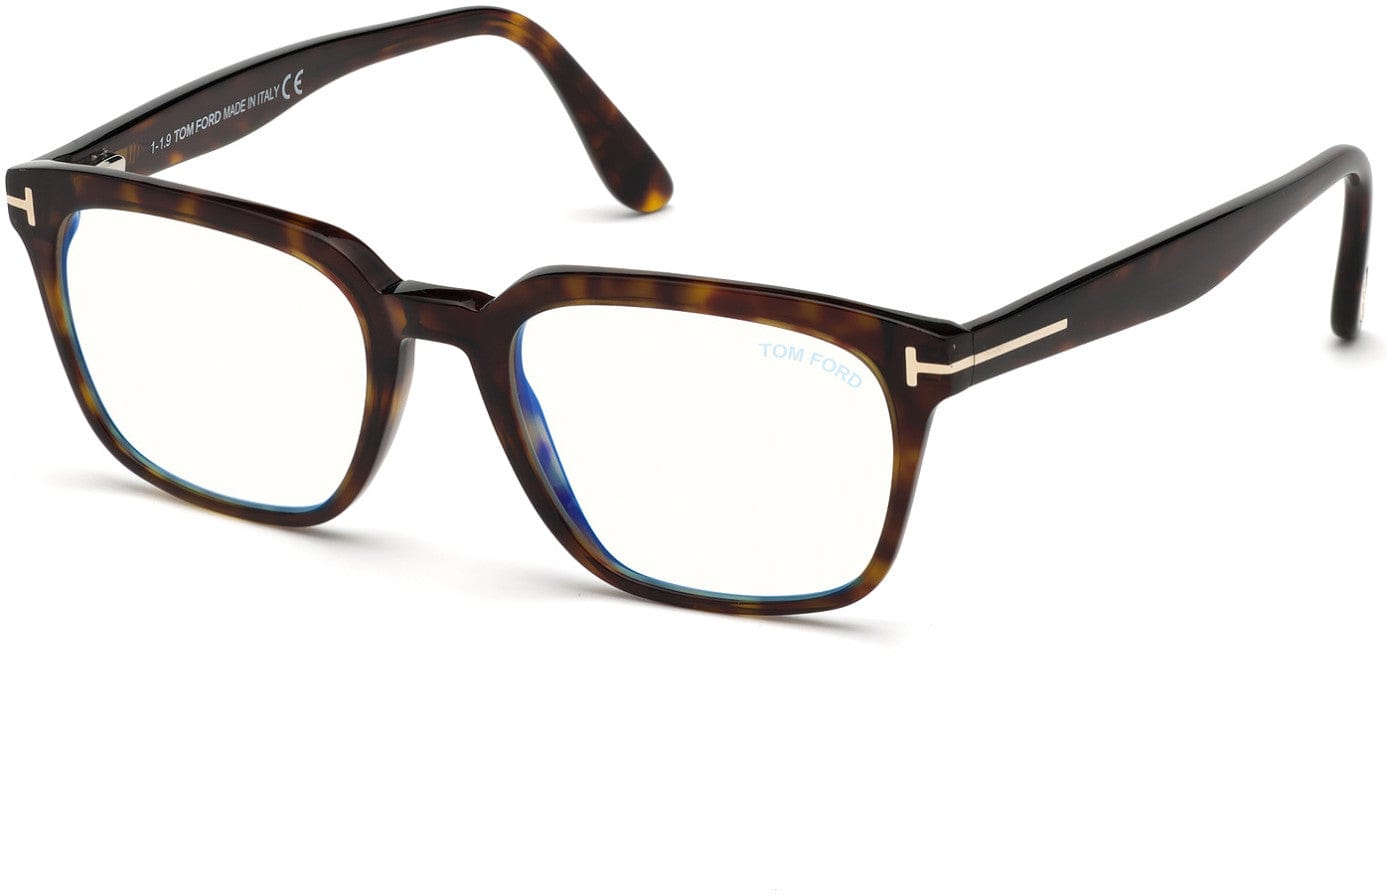 Tom Ford FT5626-B Square Eyeglasses 052-052 - Shiny Classic Dark Havana/ Blue Block Lenses